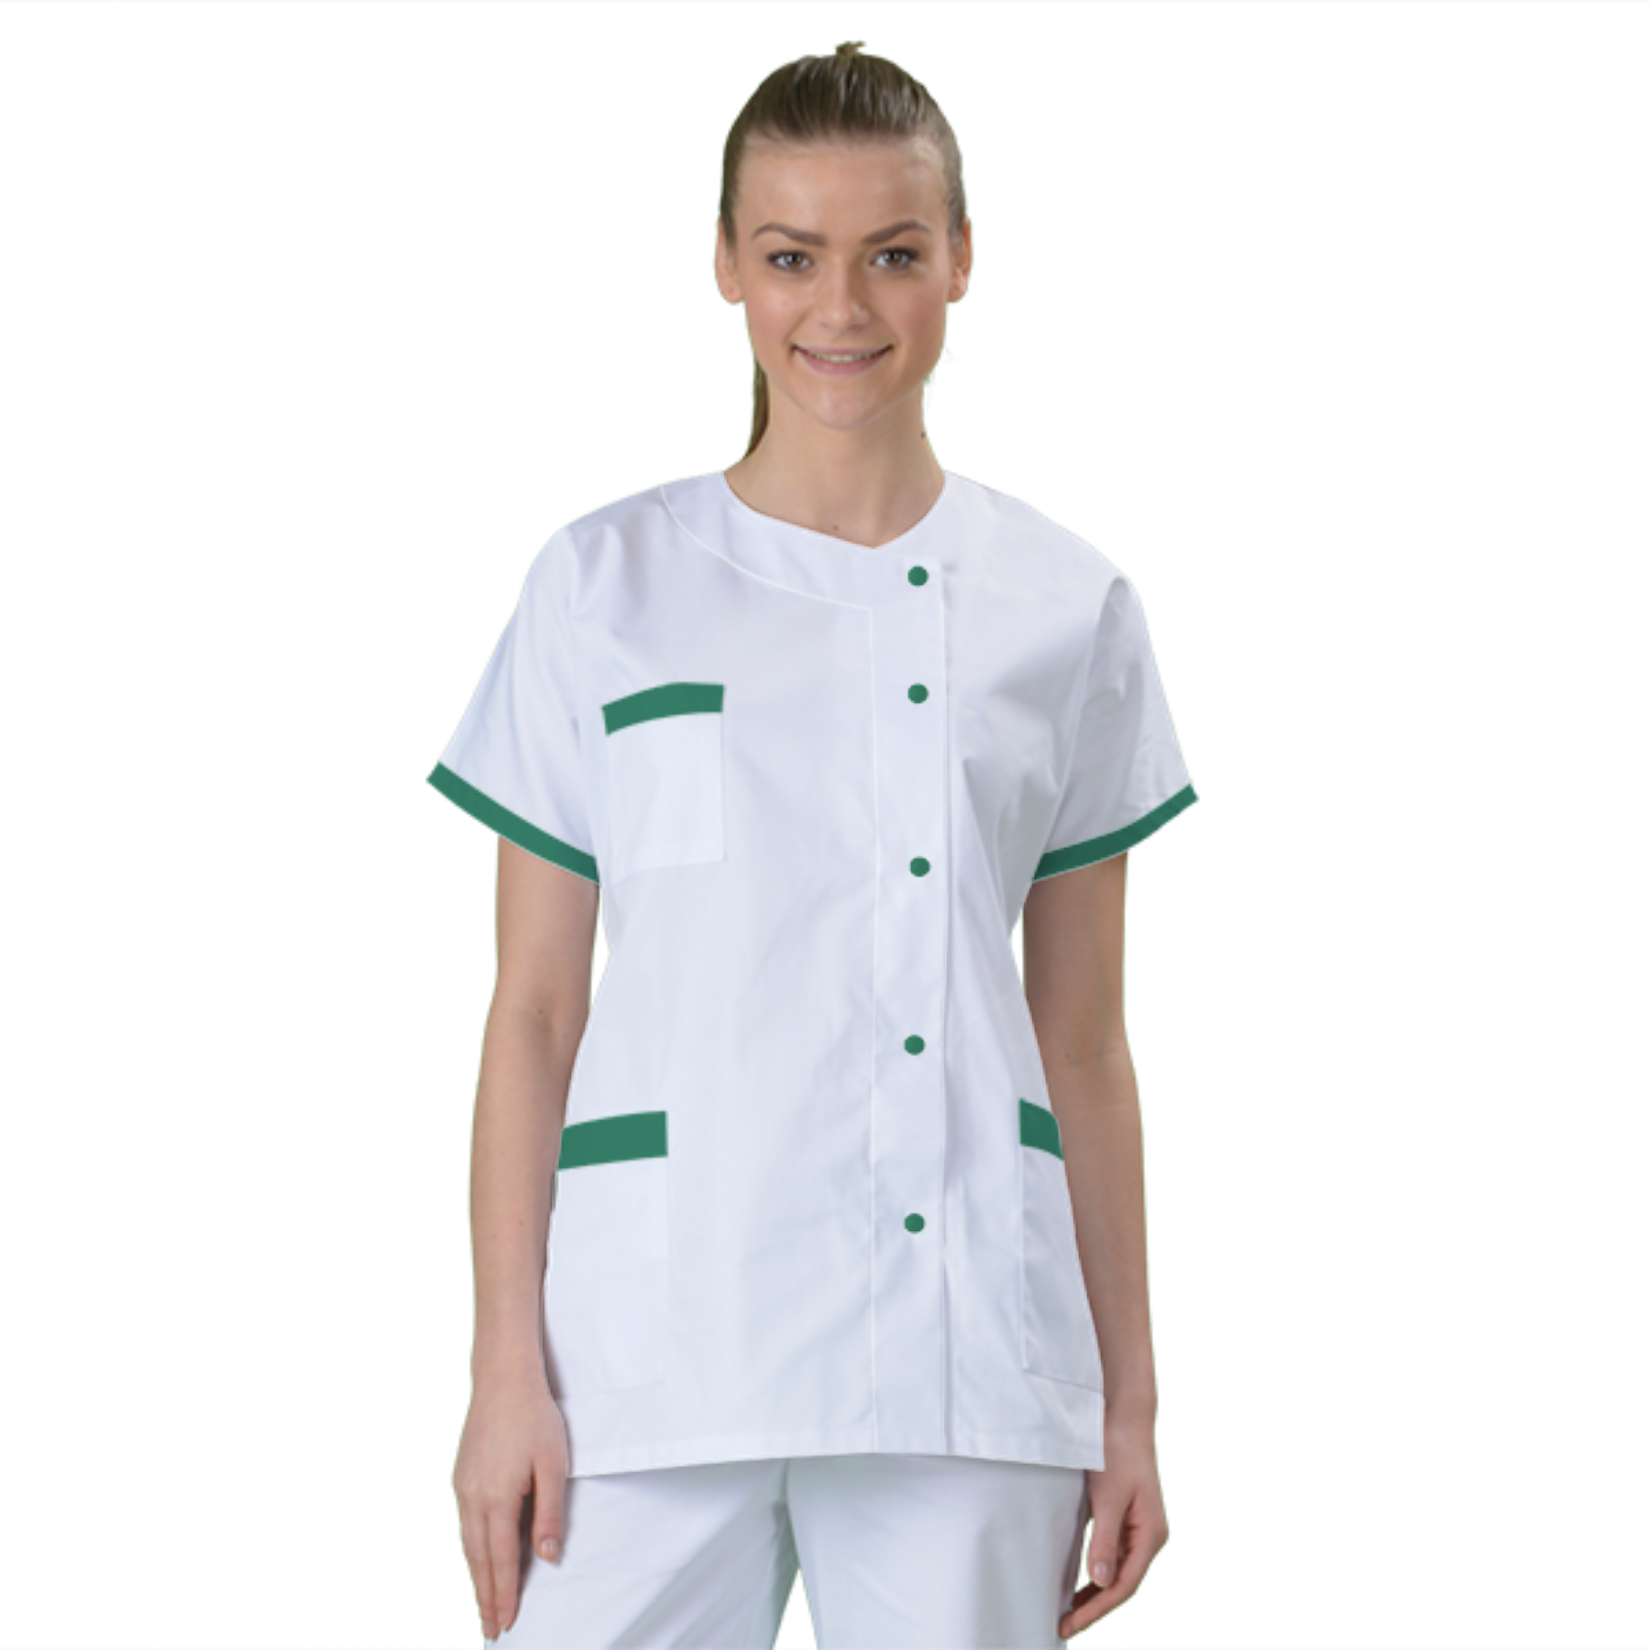 blouse-medicale-col-carre-a-personnaliser acheté - par Claudie - le 07-06-2018